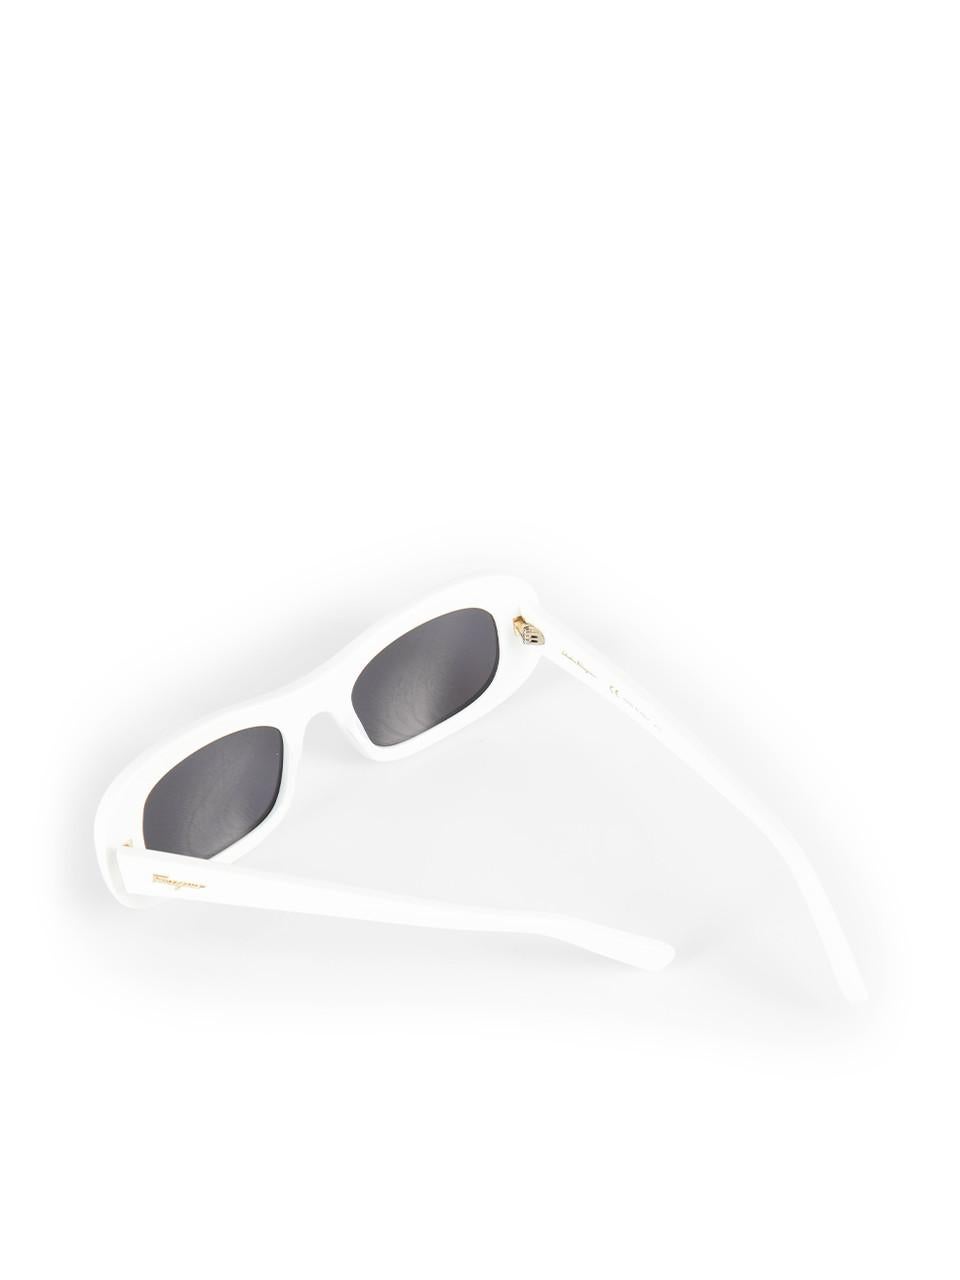 Salvatore Ferragamo White Rectangle Tinted Sunglasses For Sale 2